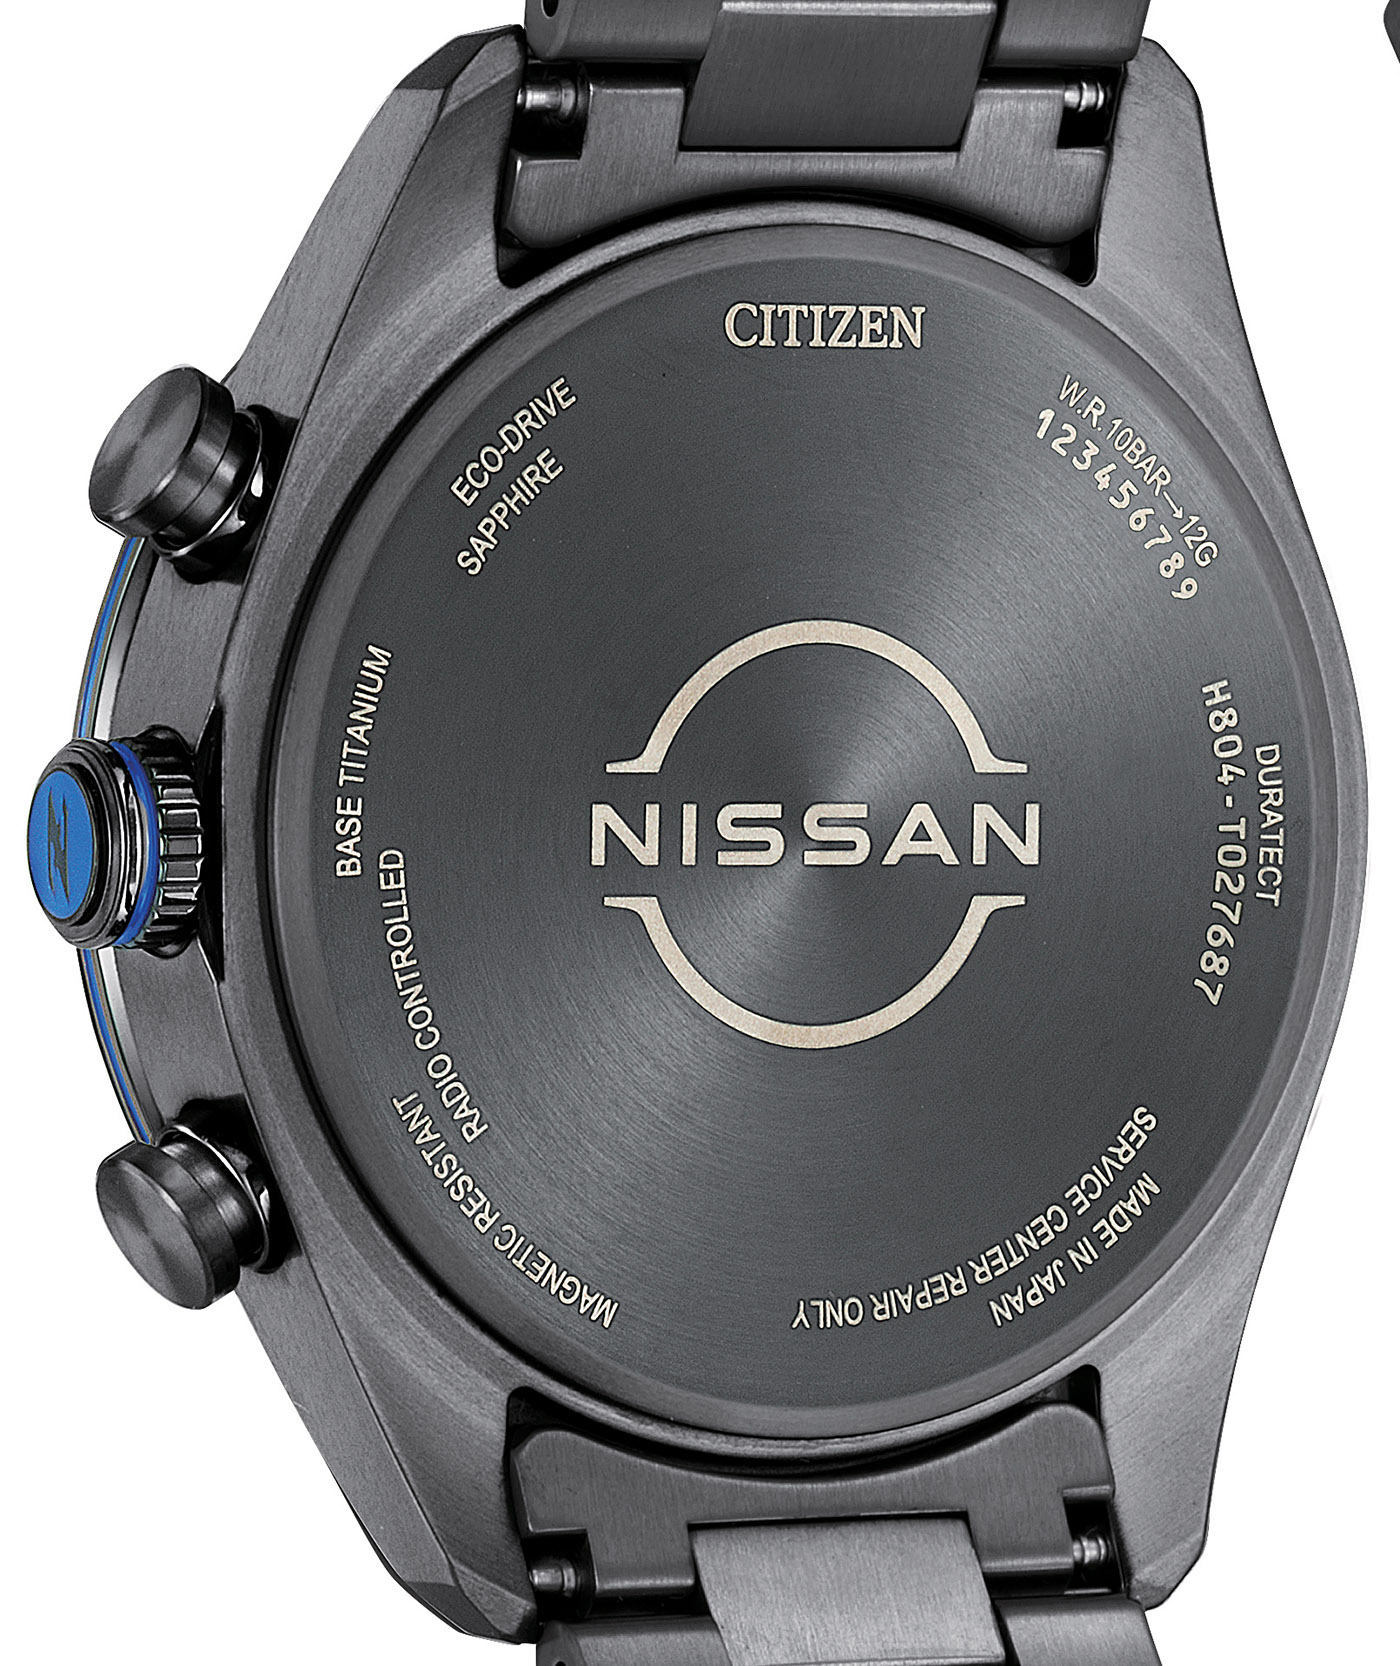 Citizen представляет две модели часов Eco-Drive вдохновленные Nissan Z